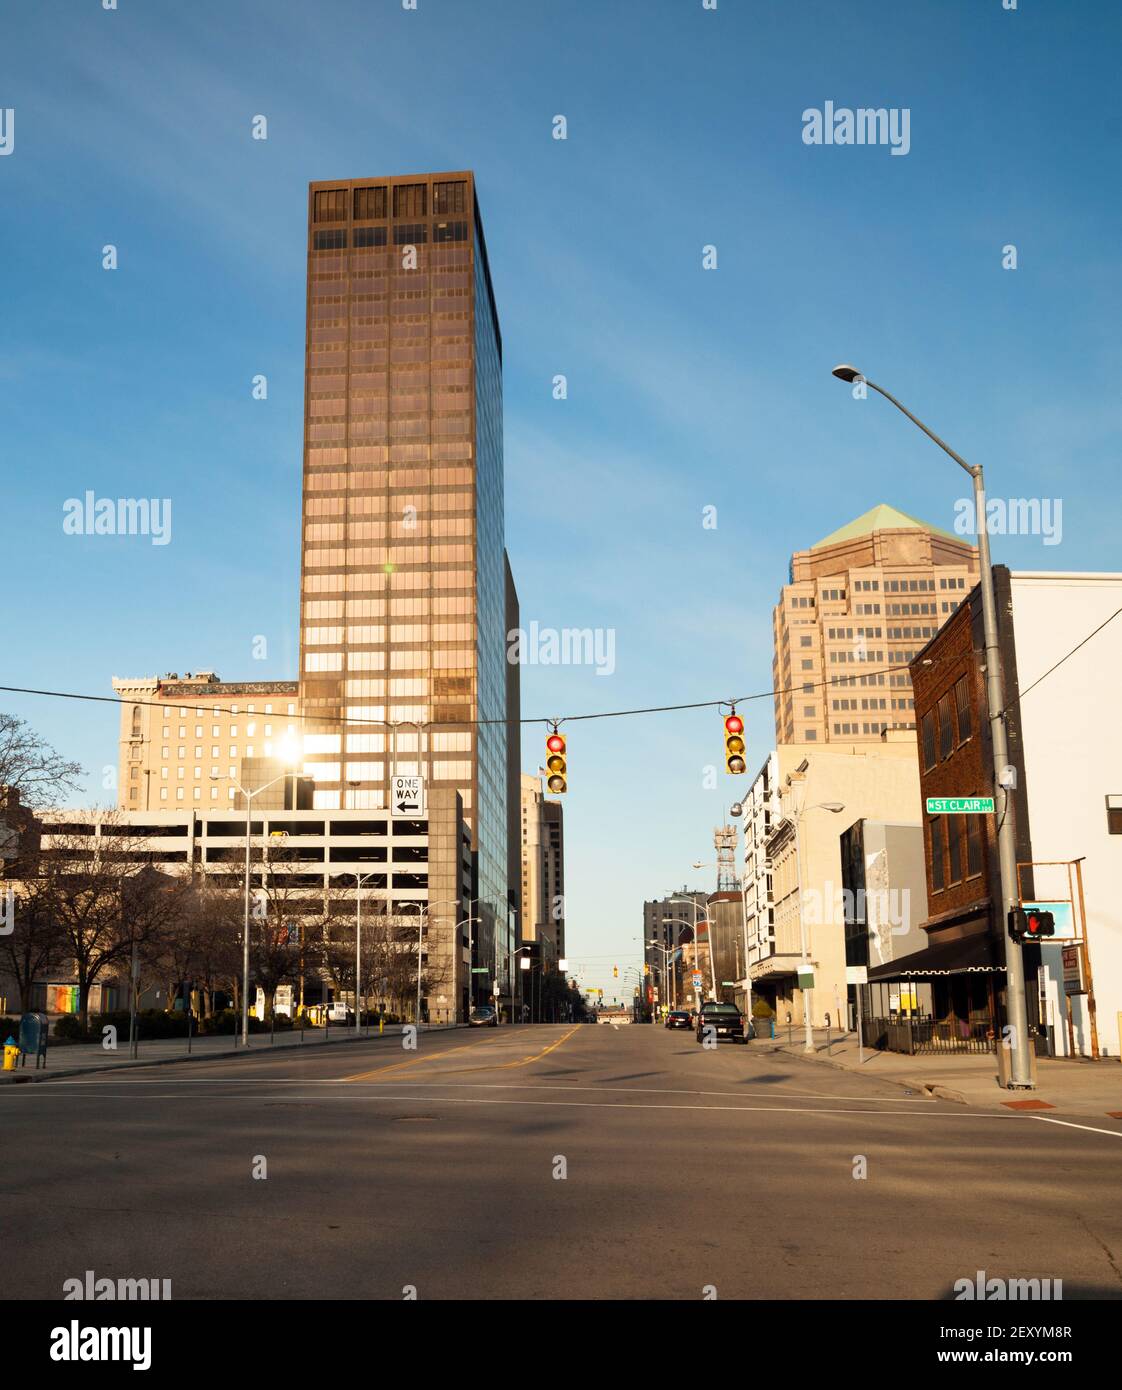 Dayton Ohio Immagini e Fotos Stock - Alamy